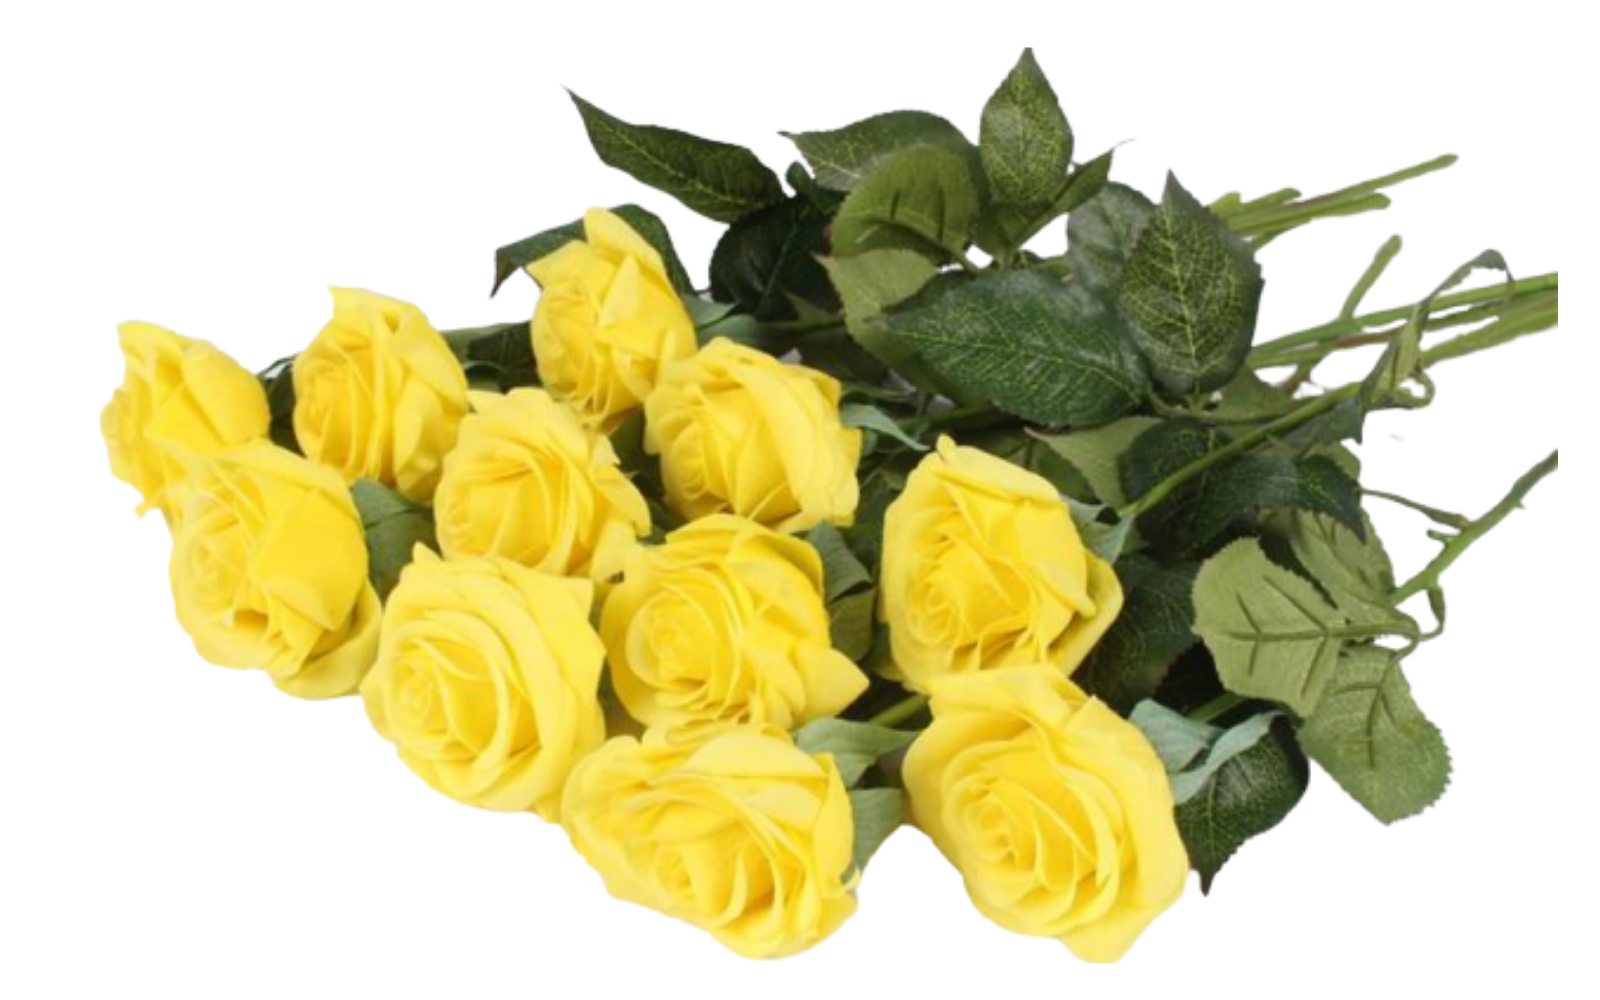 bouquet de roses jaunes